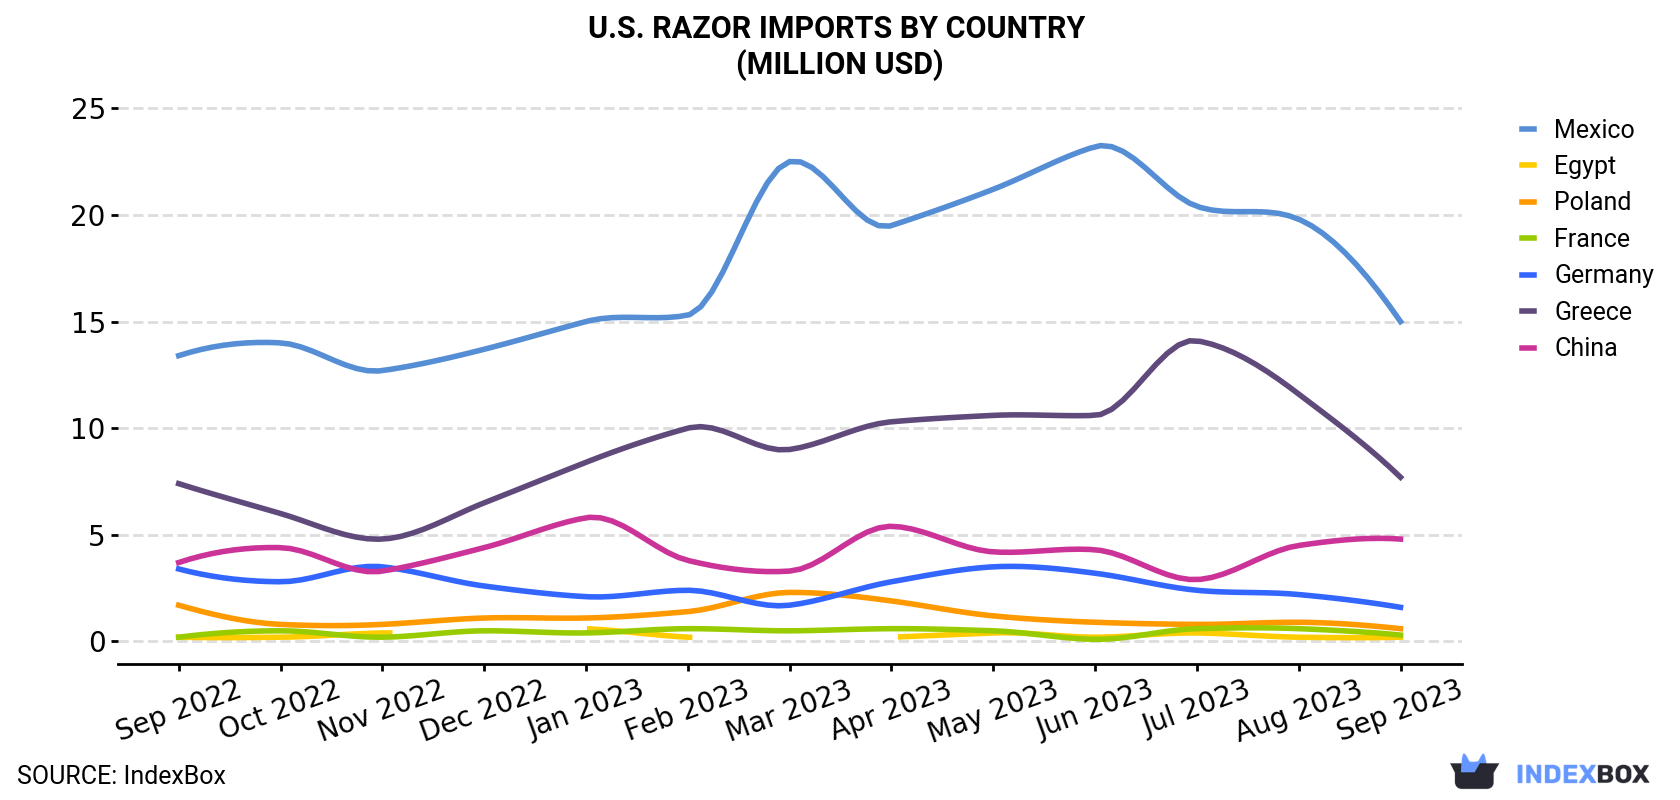 U.S. Razor Imports By Country (Million USD)